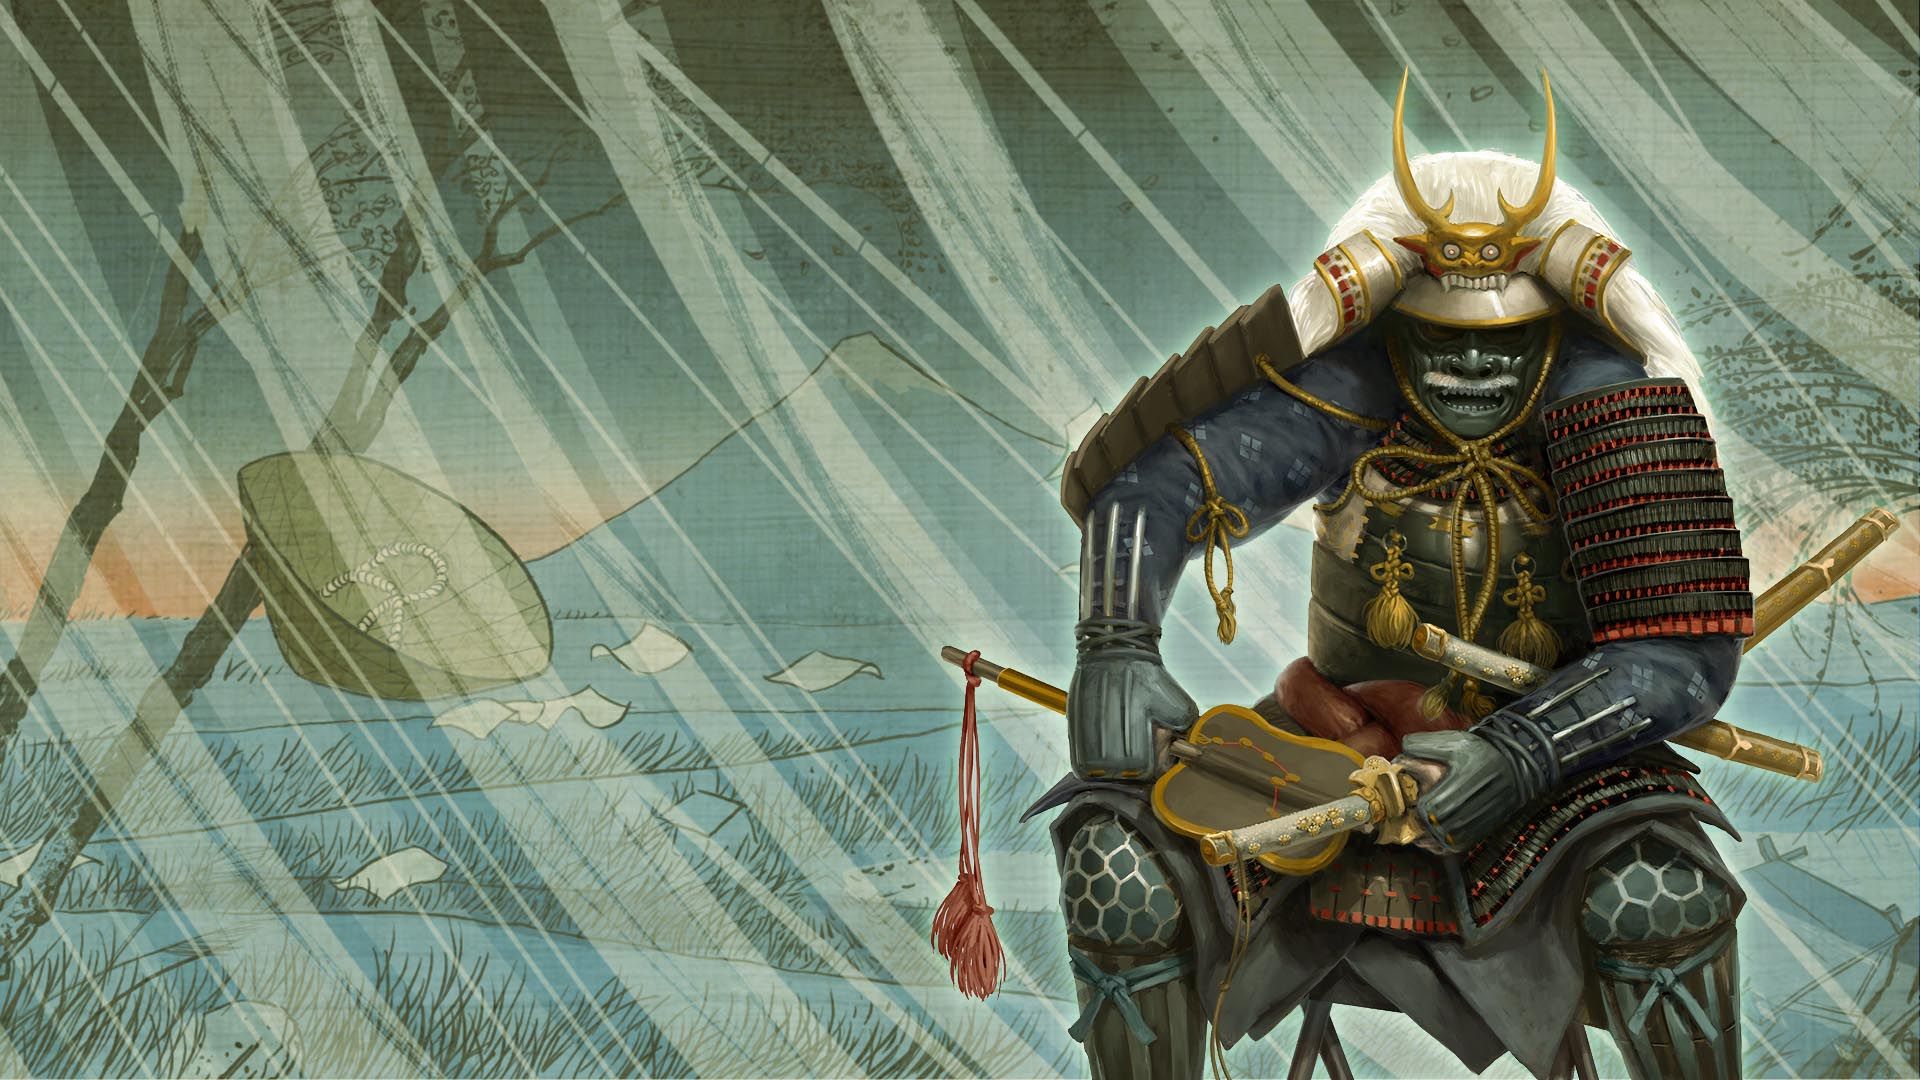 Wallpaper from Total War: Shogun 2